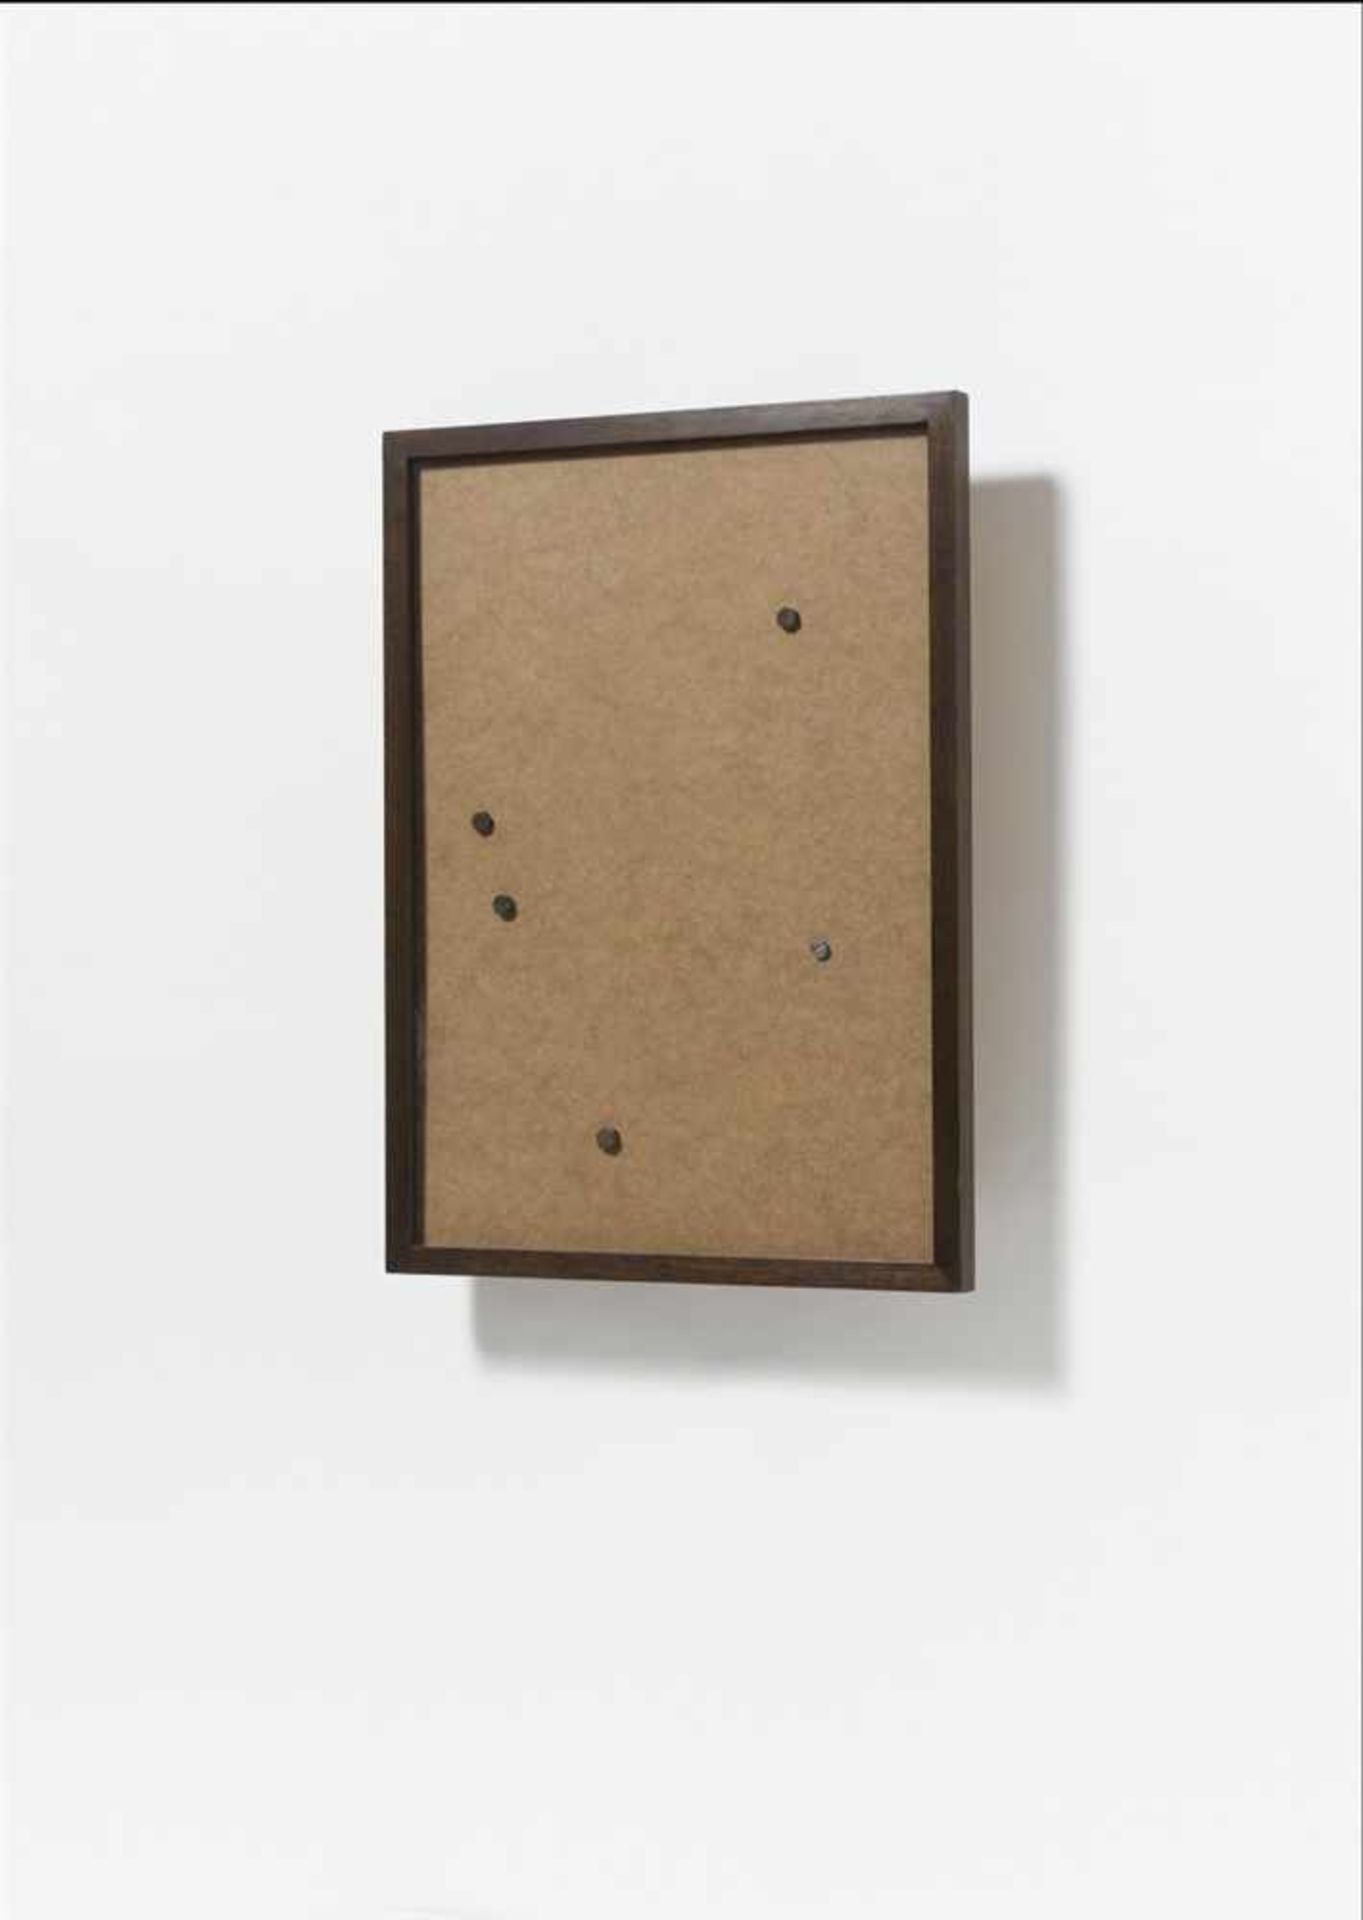 Georg HeroldOhne Titel Holz, Hartfaser, Schrauben und Glasrahmen. 75 x 55 x 12 cm. Rückseitig auf